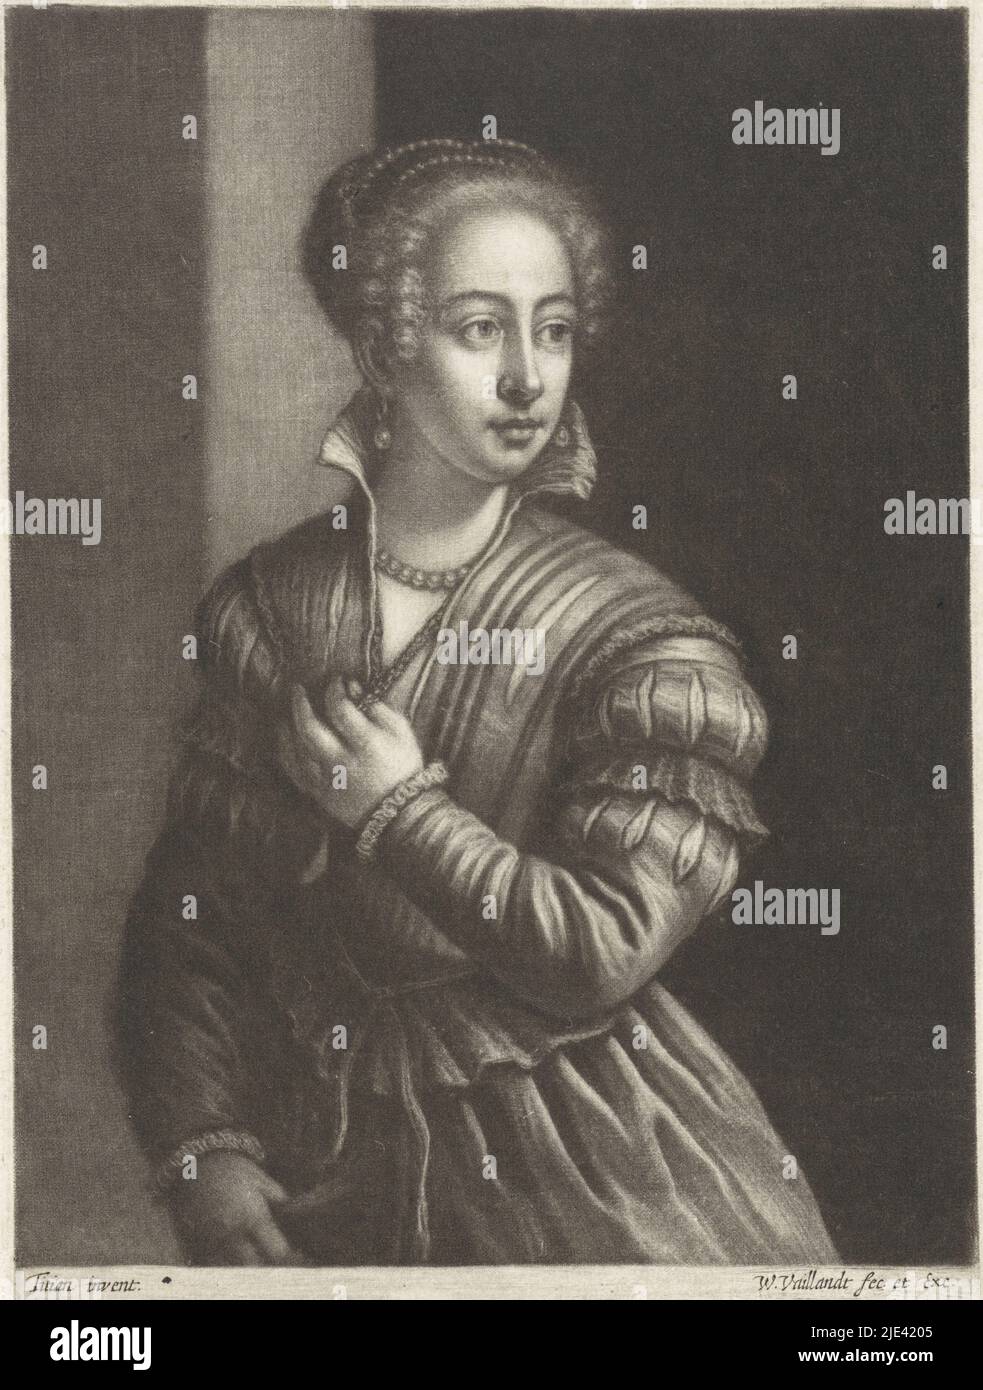 Mujer de vestido veneciano, Wallerant Vaillant, después de Tiziano, 1658 - 1677, imprenta: Wallerant Vaillant, (mencionado en el objeto), después de: Titiaan, (mencionado en el objeto), editor: Wallerant Vaillant, (mencionado en el objeto), 1658 - 1677, papel, al 208 mm x al 153 mm Foto de stock